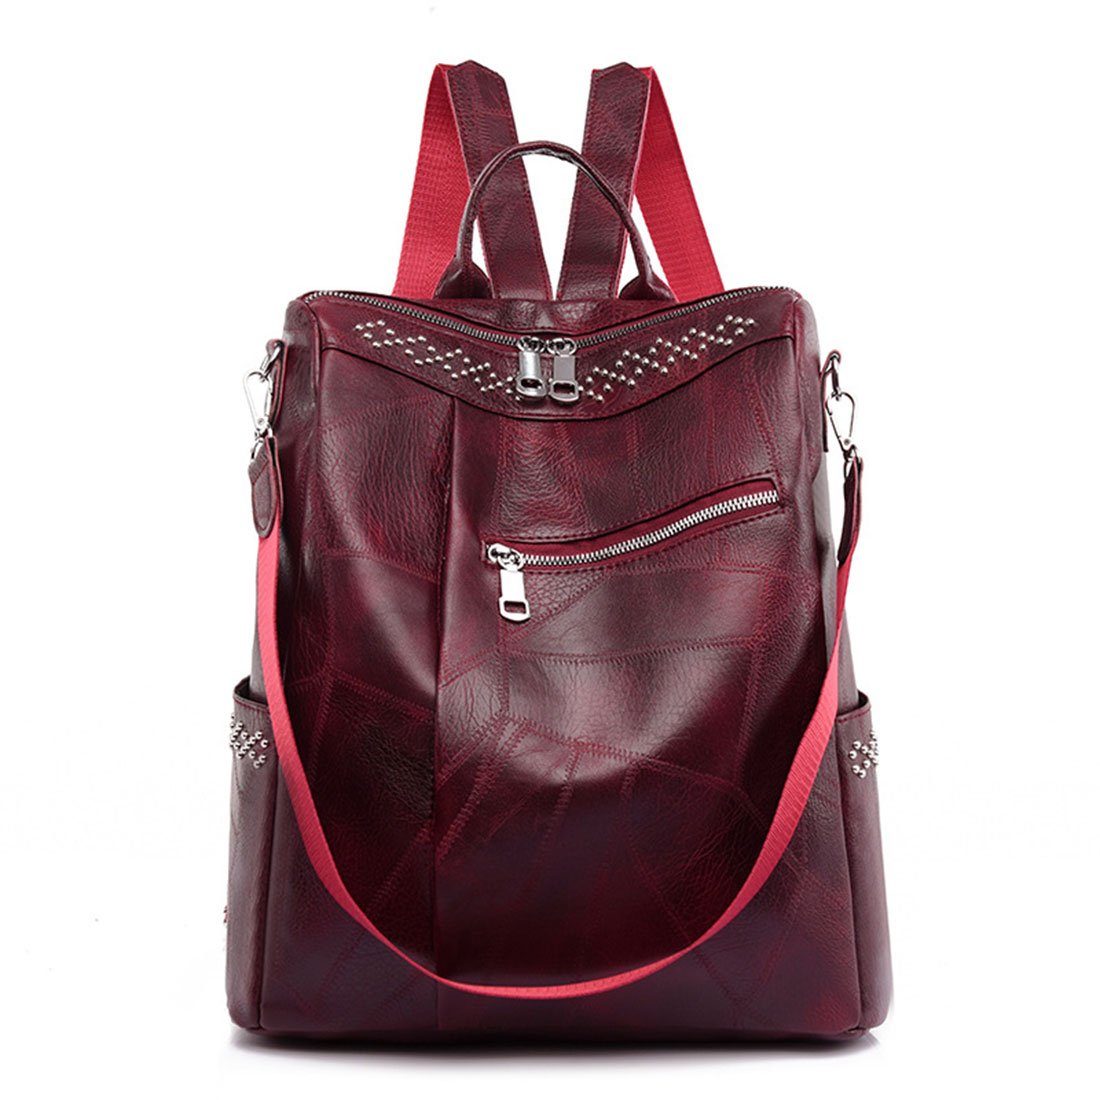 HNDSG Cityrucksack Damen Fashion Travel Shoulder Backpack,Soft Leather Schoolbag Backpack Rot